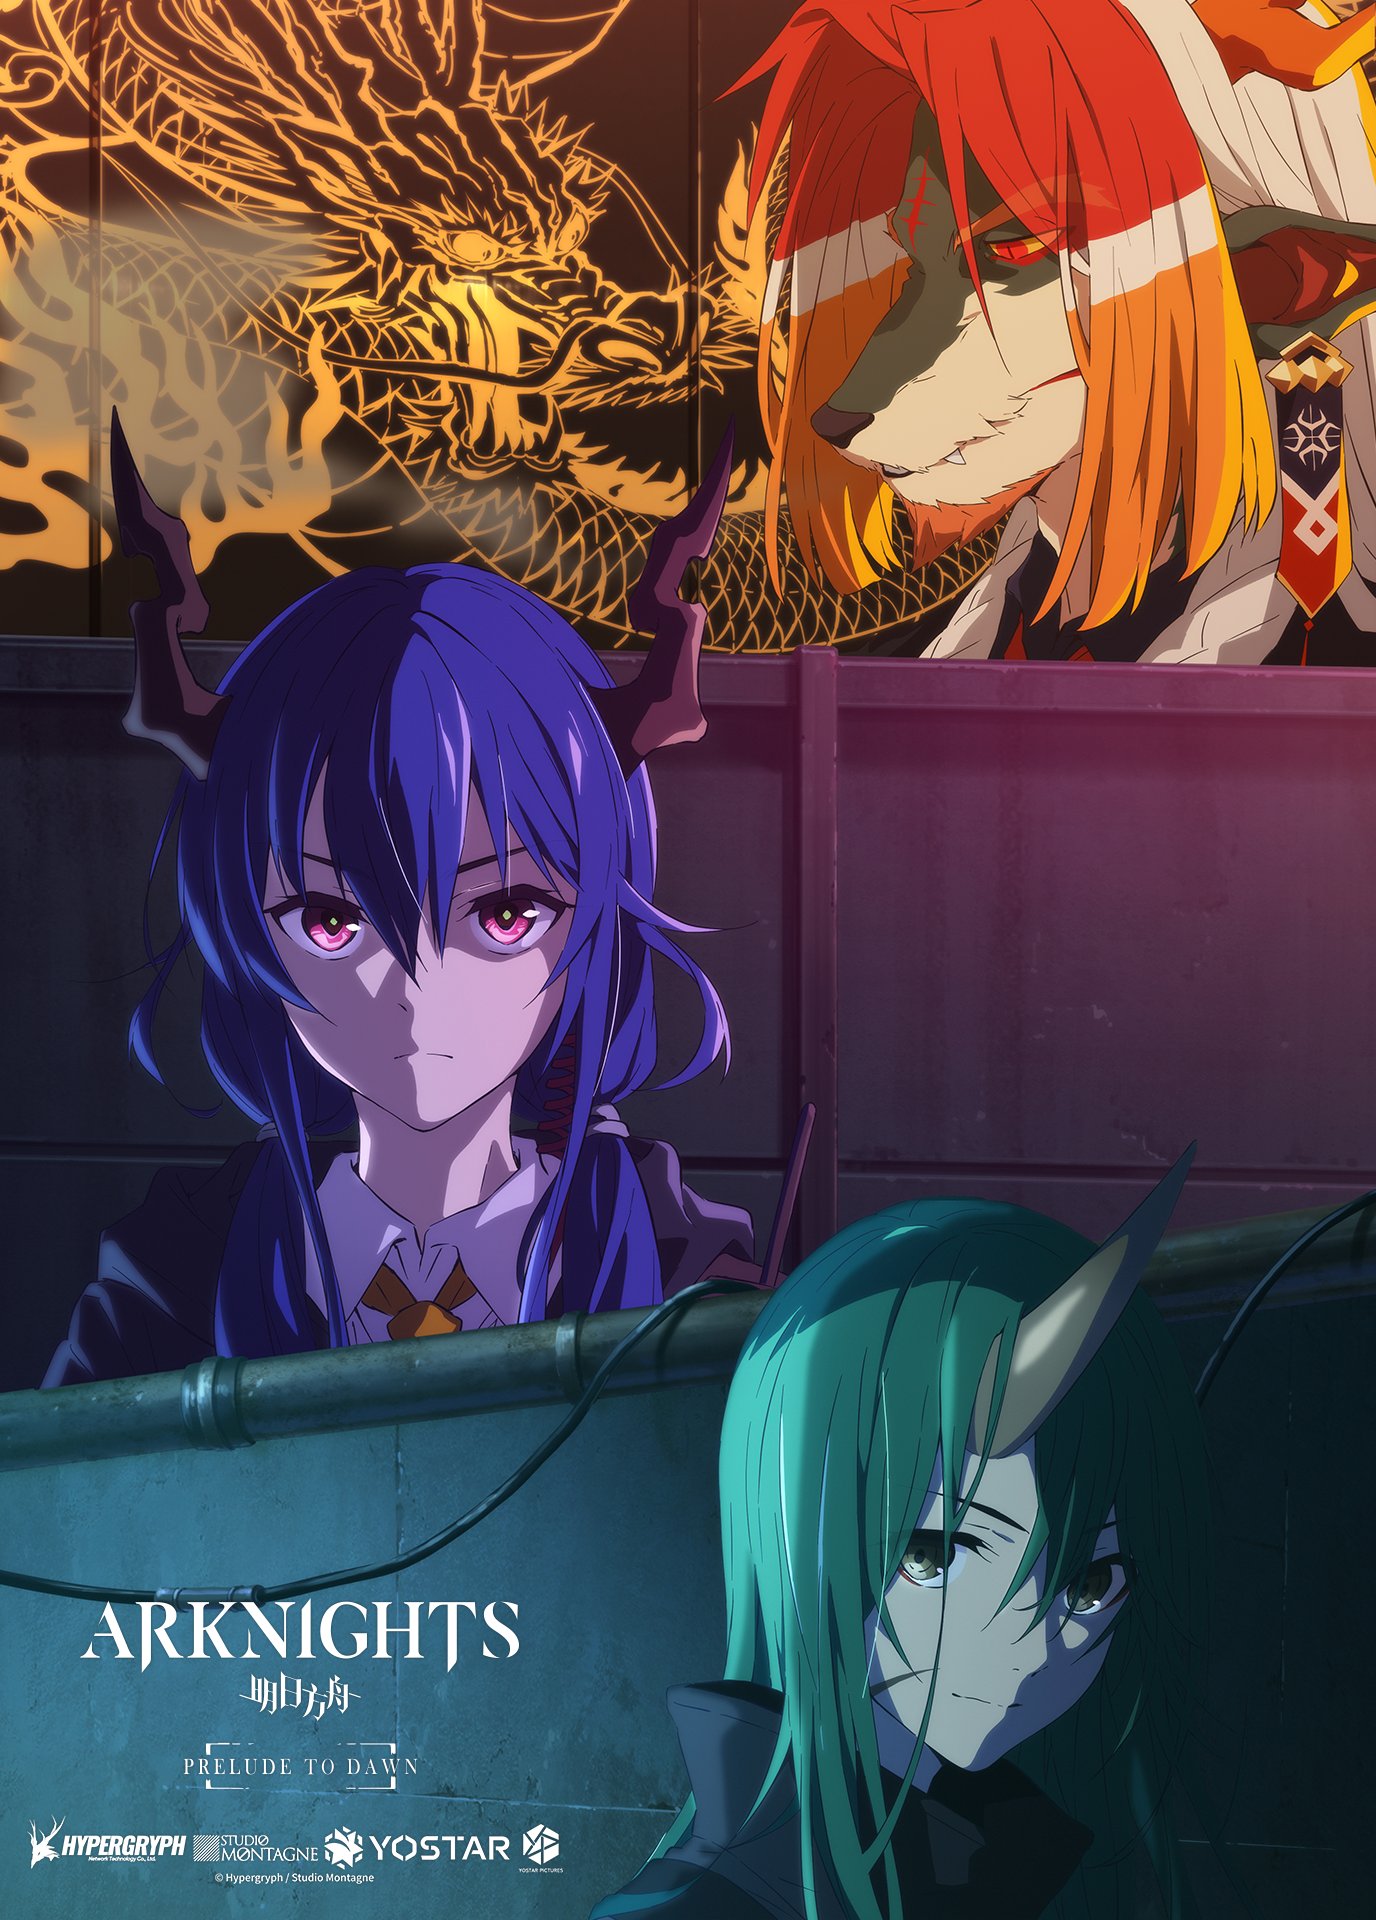 arknights character visual